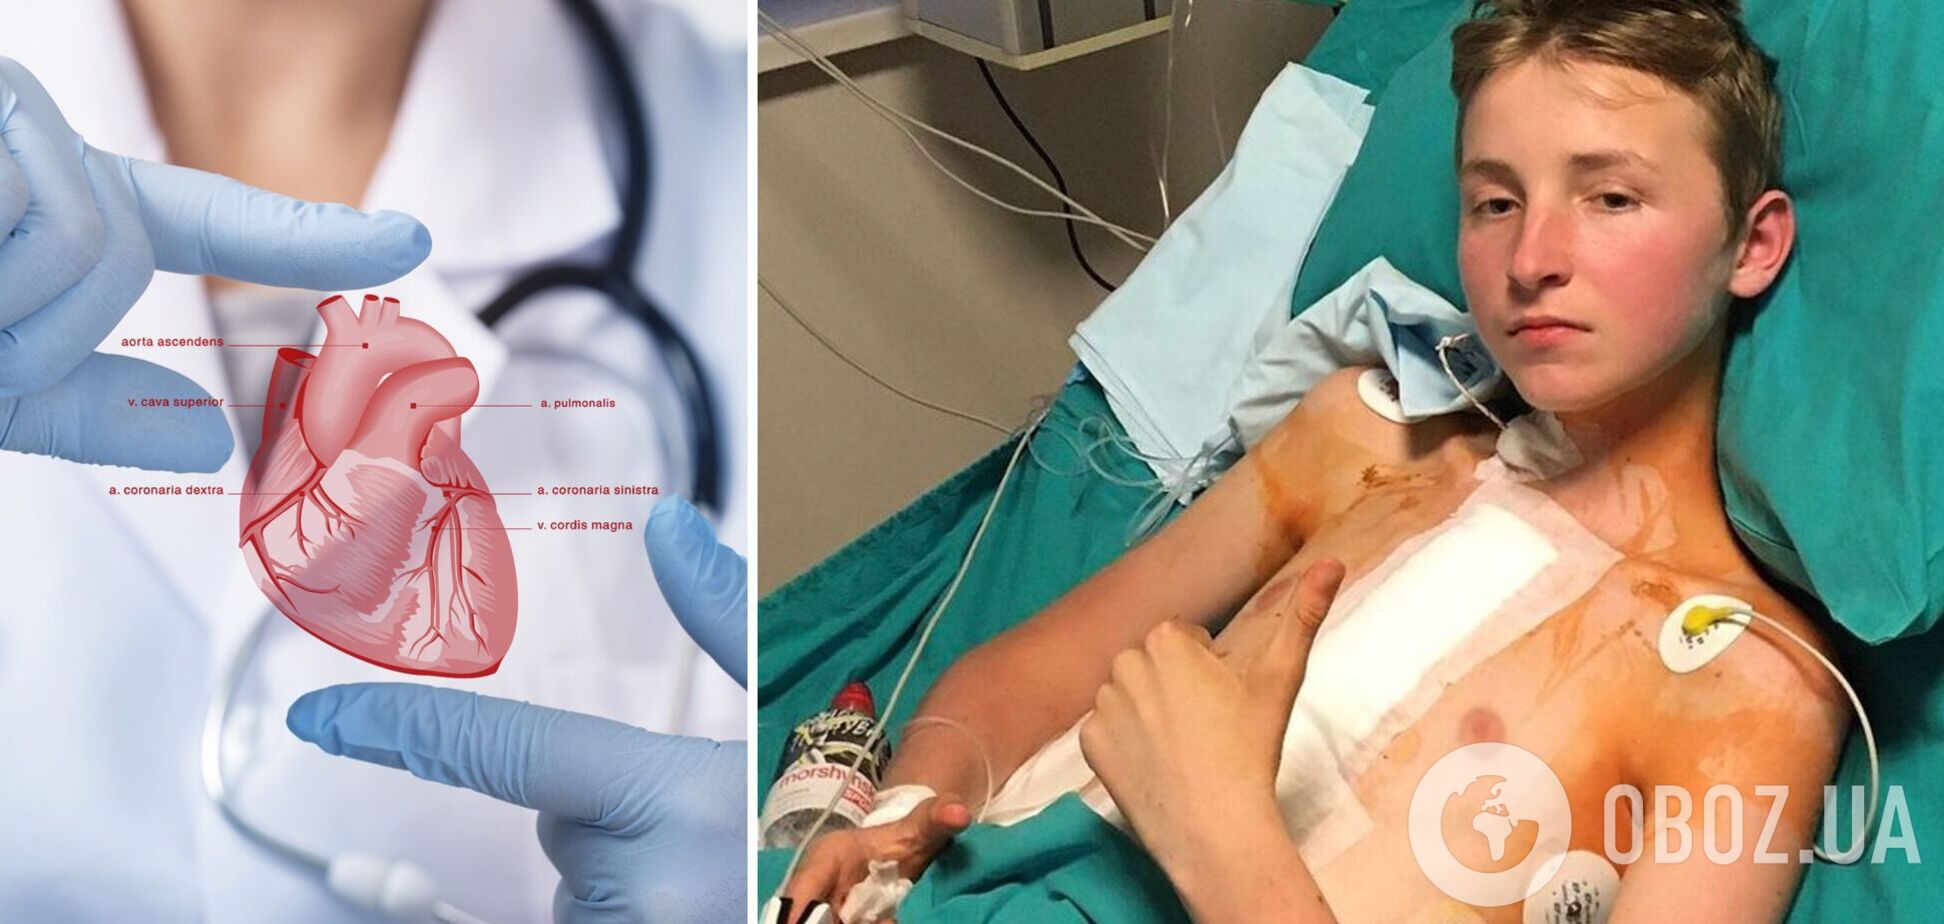 13-річний підліток, якому вперше в Україні пересадили серце, про свій стан: дихати легше. Фото